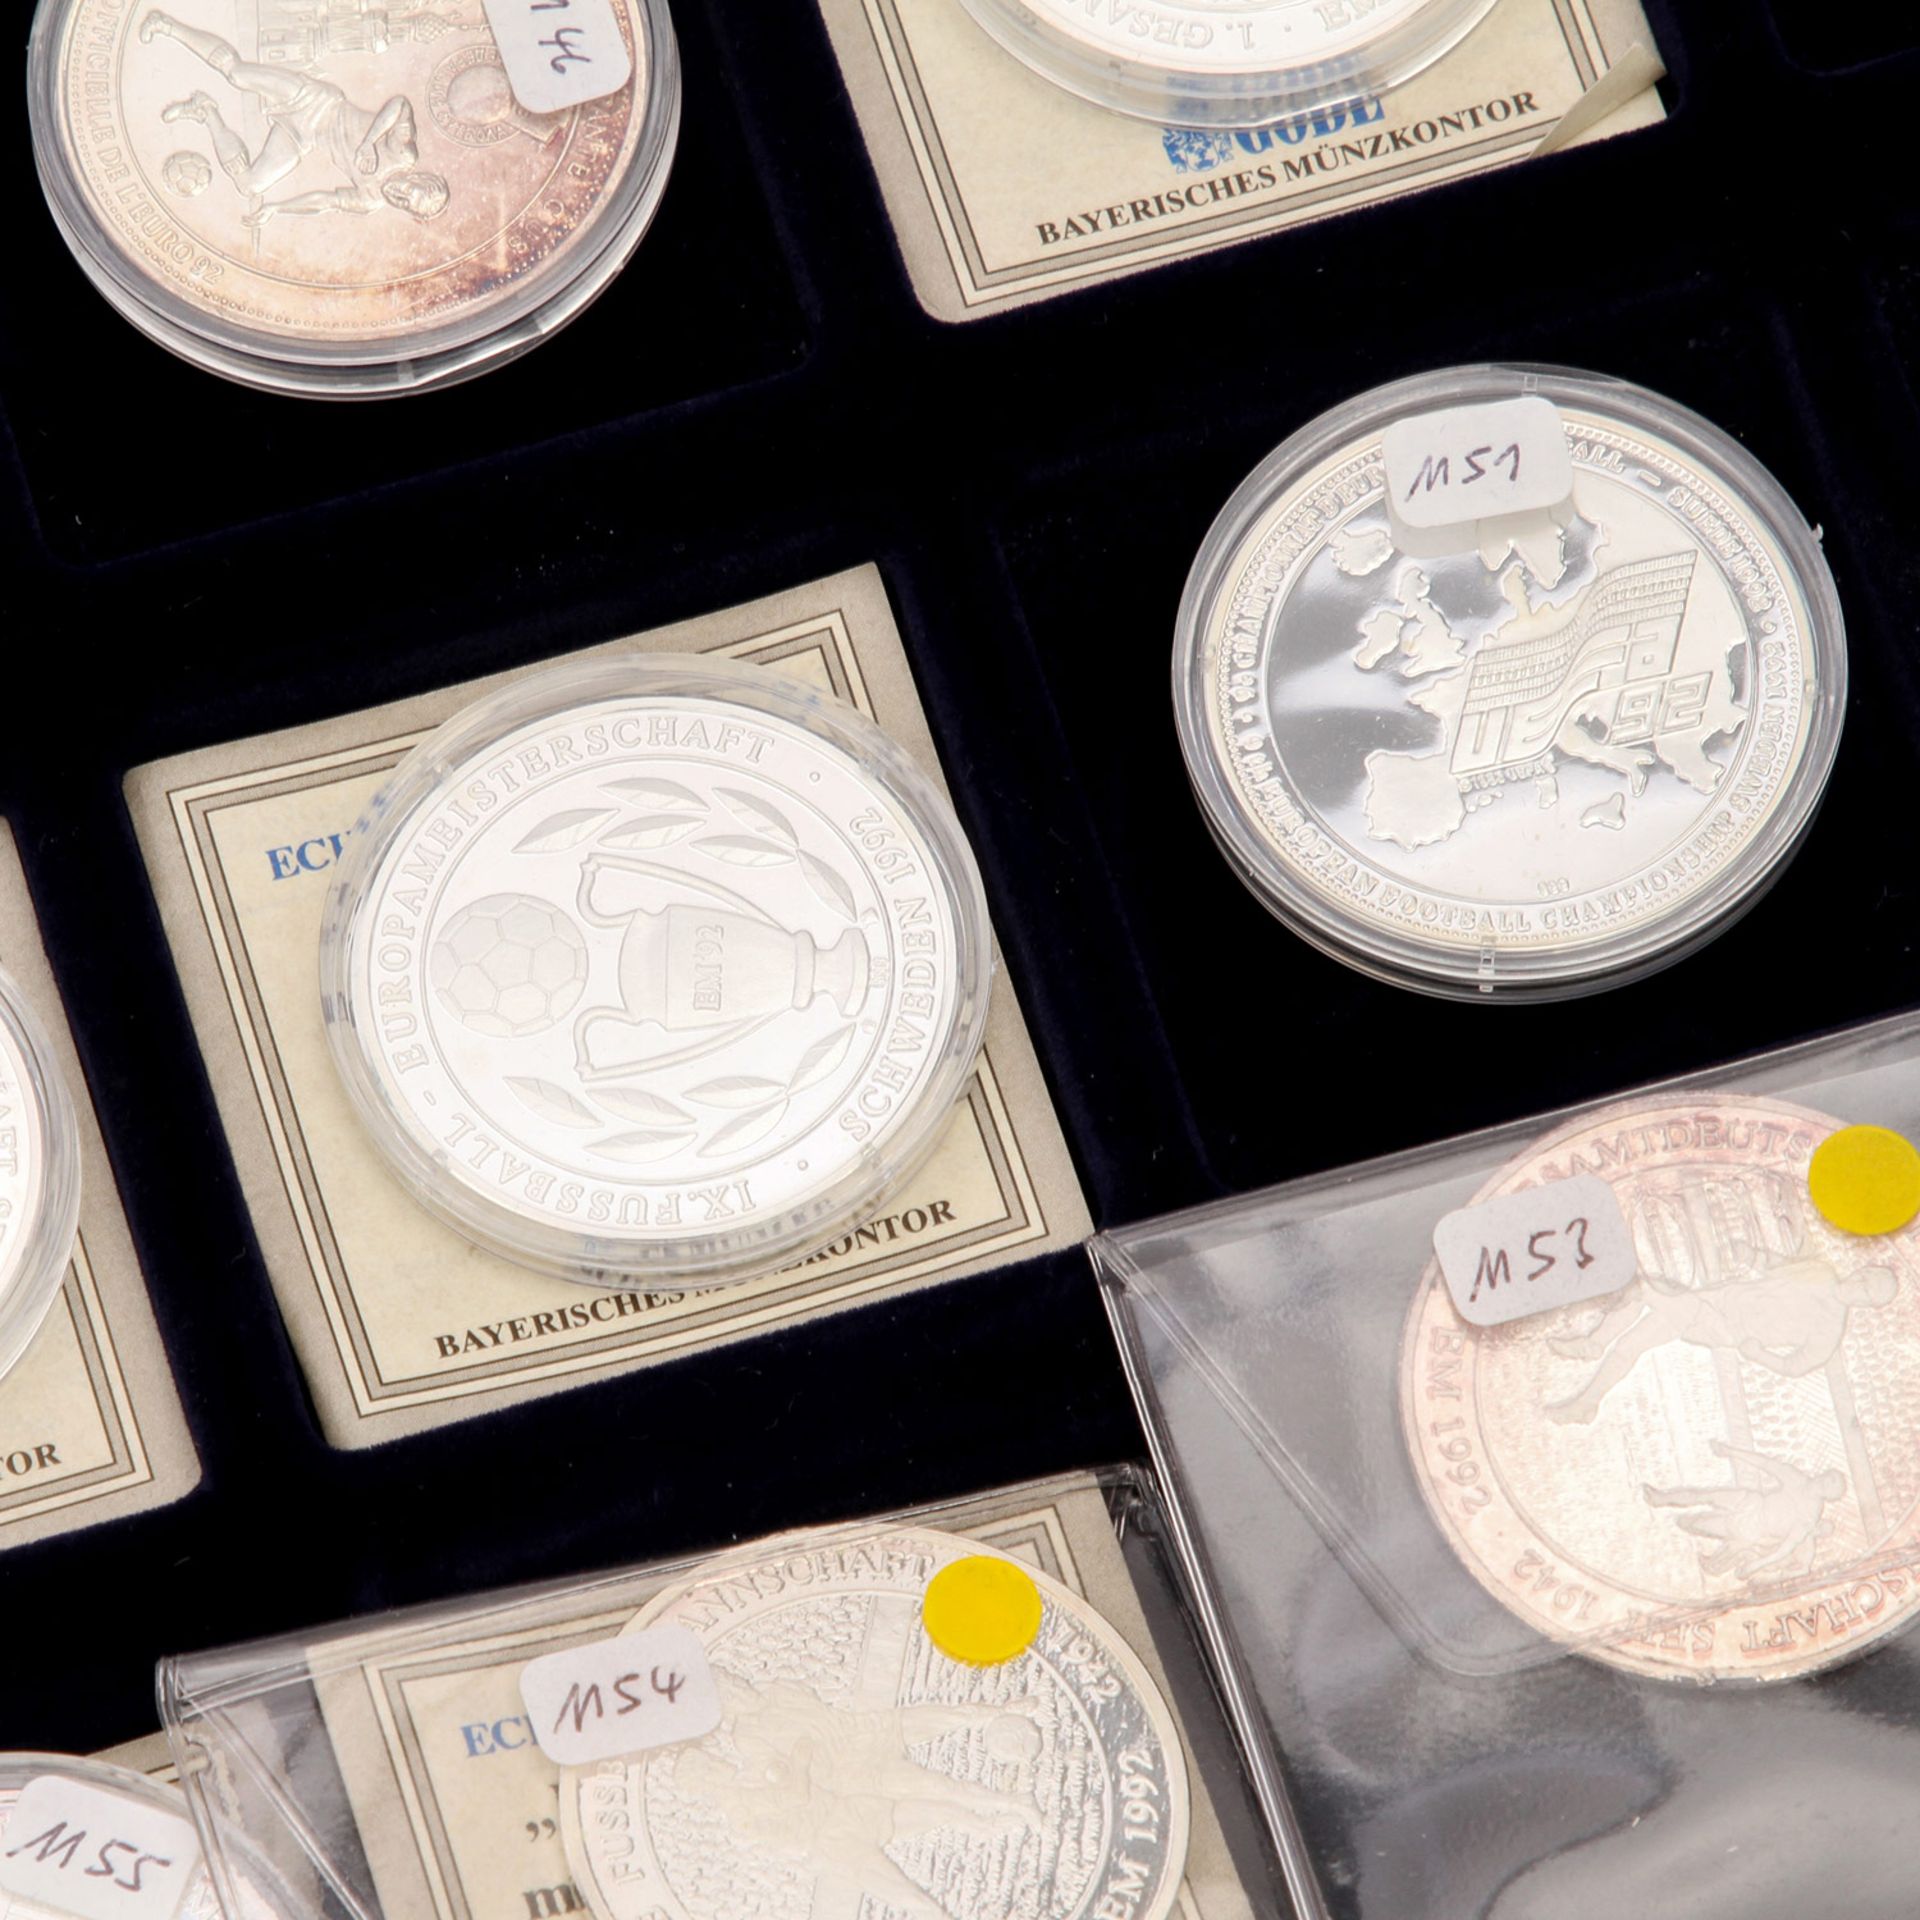 Lot Münzen und Medaillen, meist Olympia Thema, darunter auch wenige Can Dollars und China 5 Yuan - Bild 3 aus 5